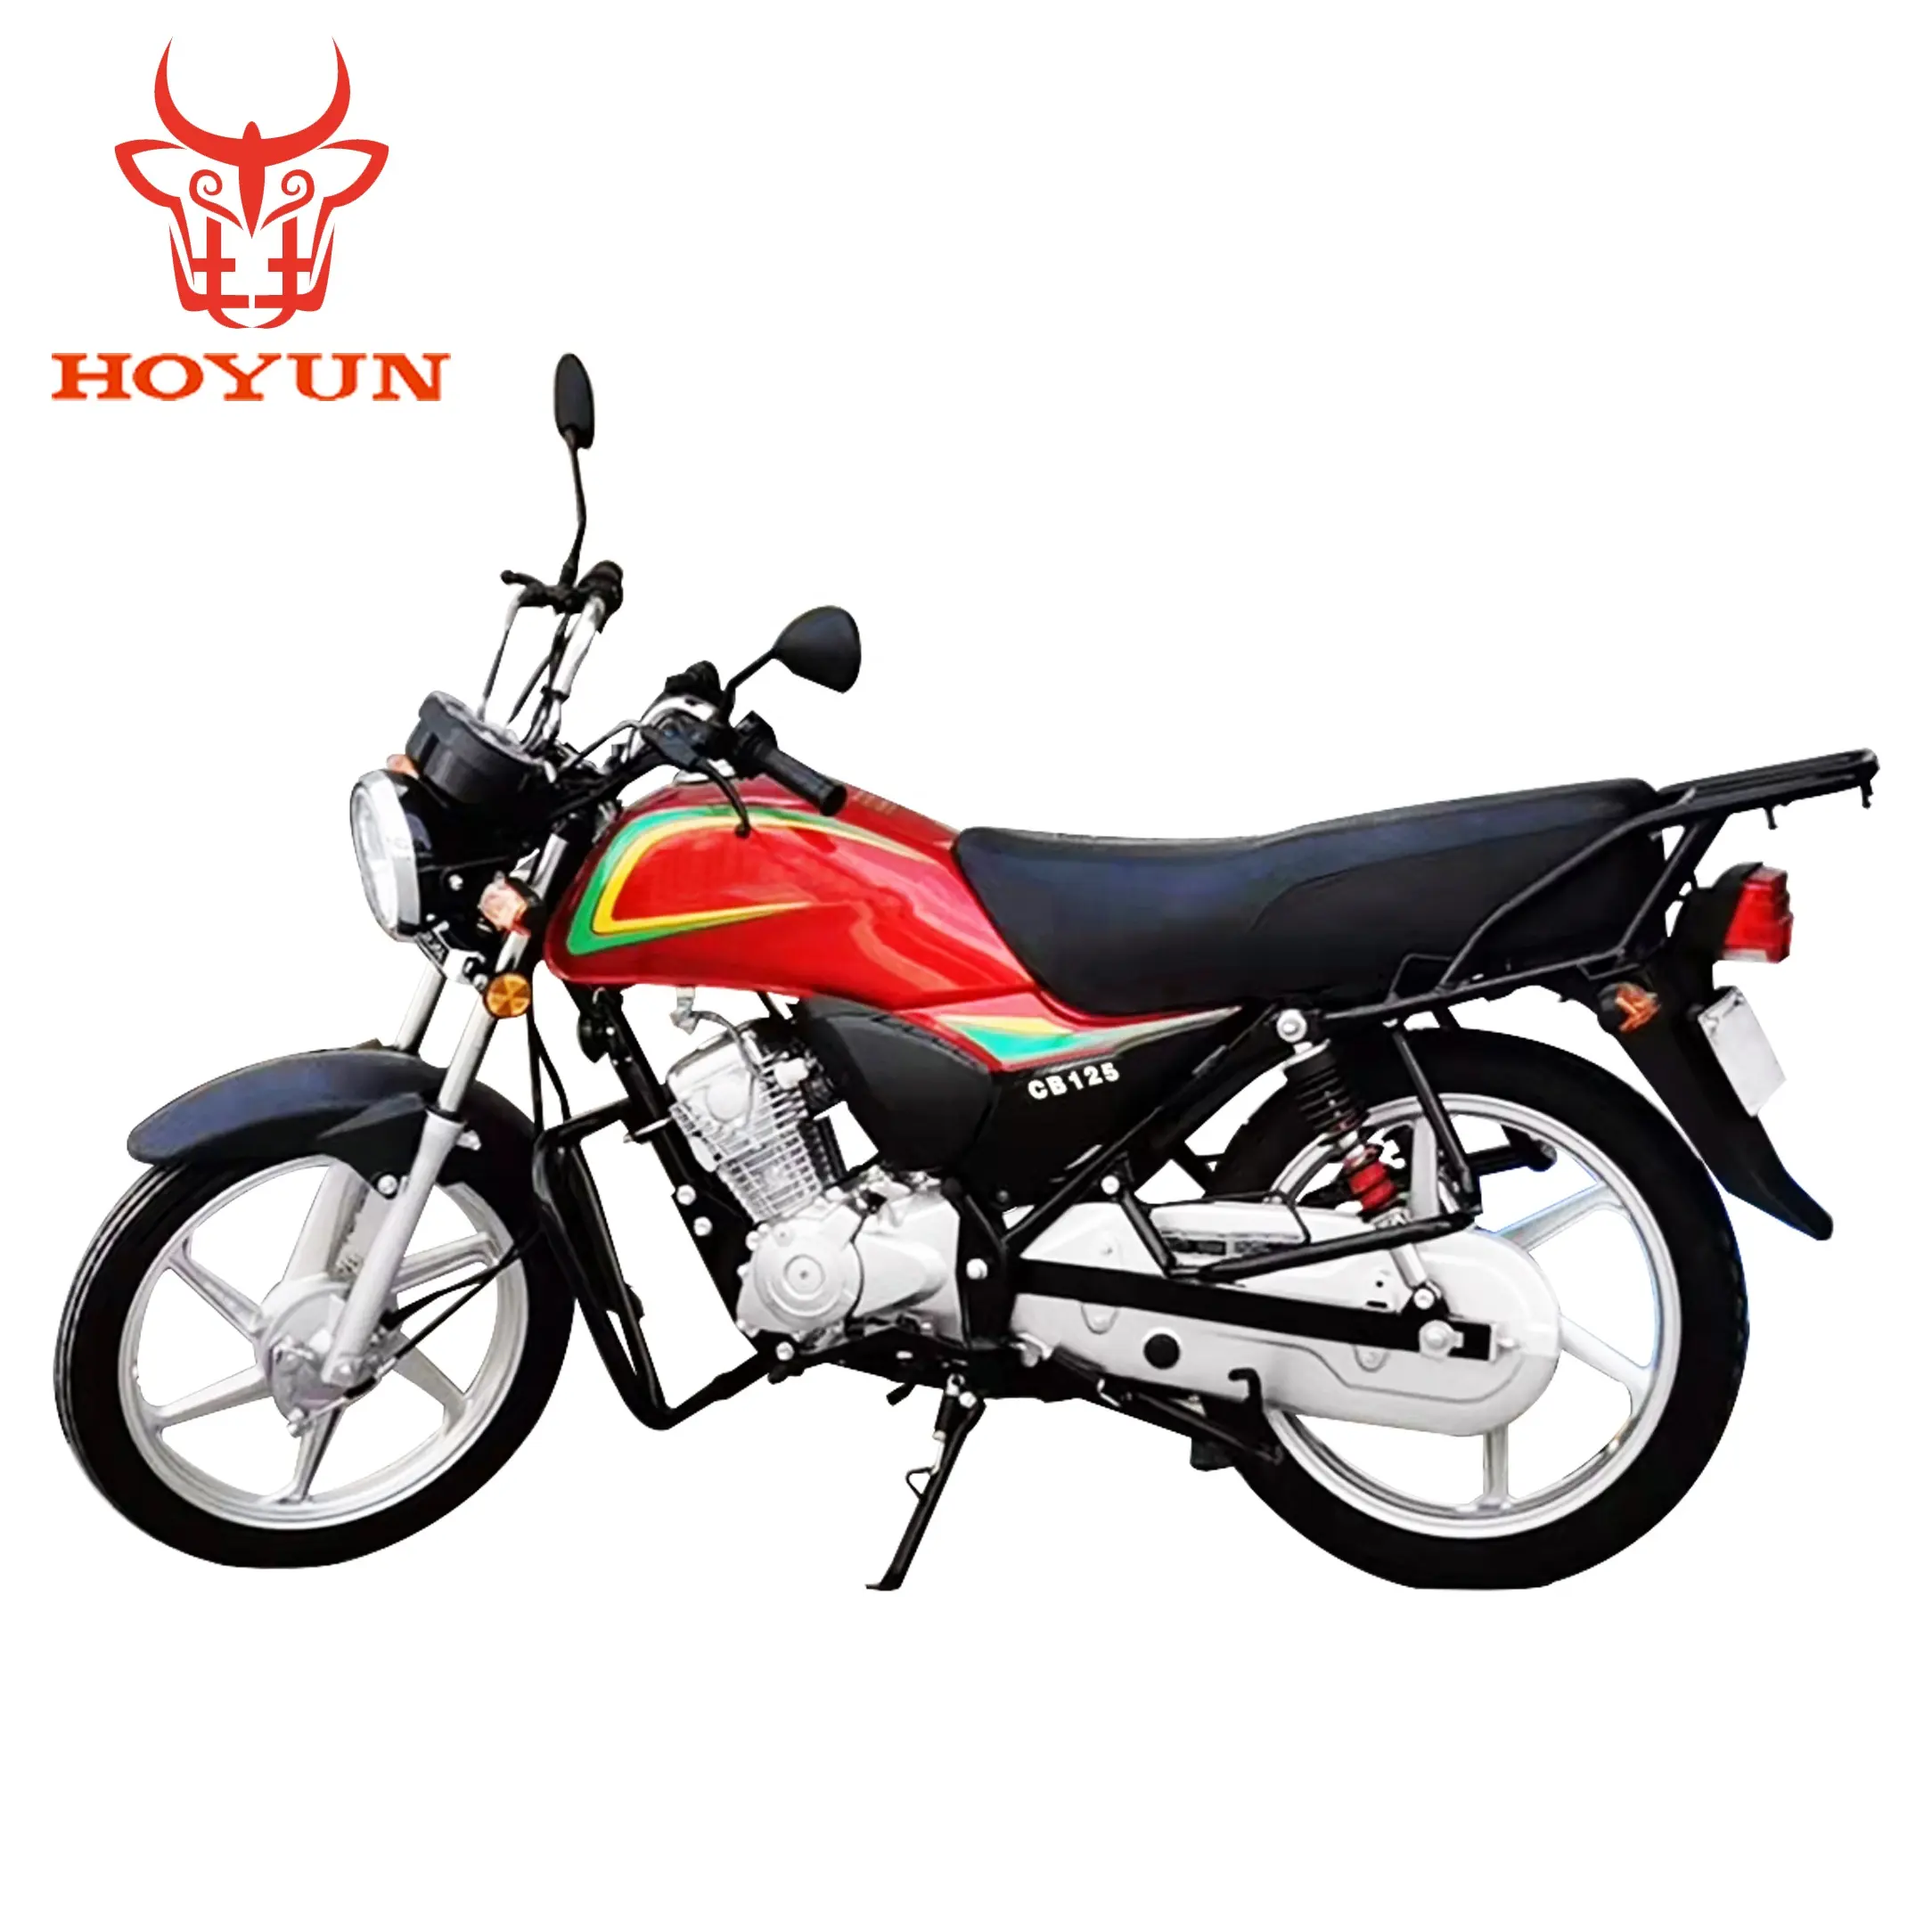 BENCCX HOYUNケニヤギニアソマリアモトAC-CB125ボクサー125cc 150cc 200ccその他のオートバイとapachエンジンオートバイヘルメット